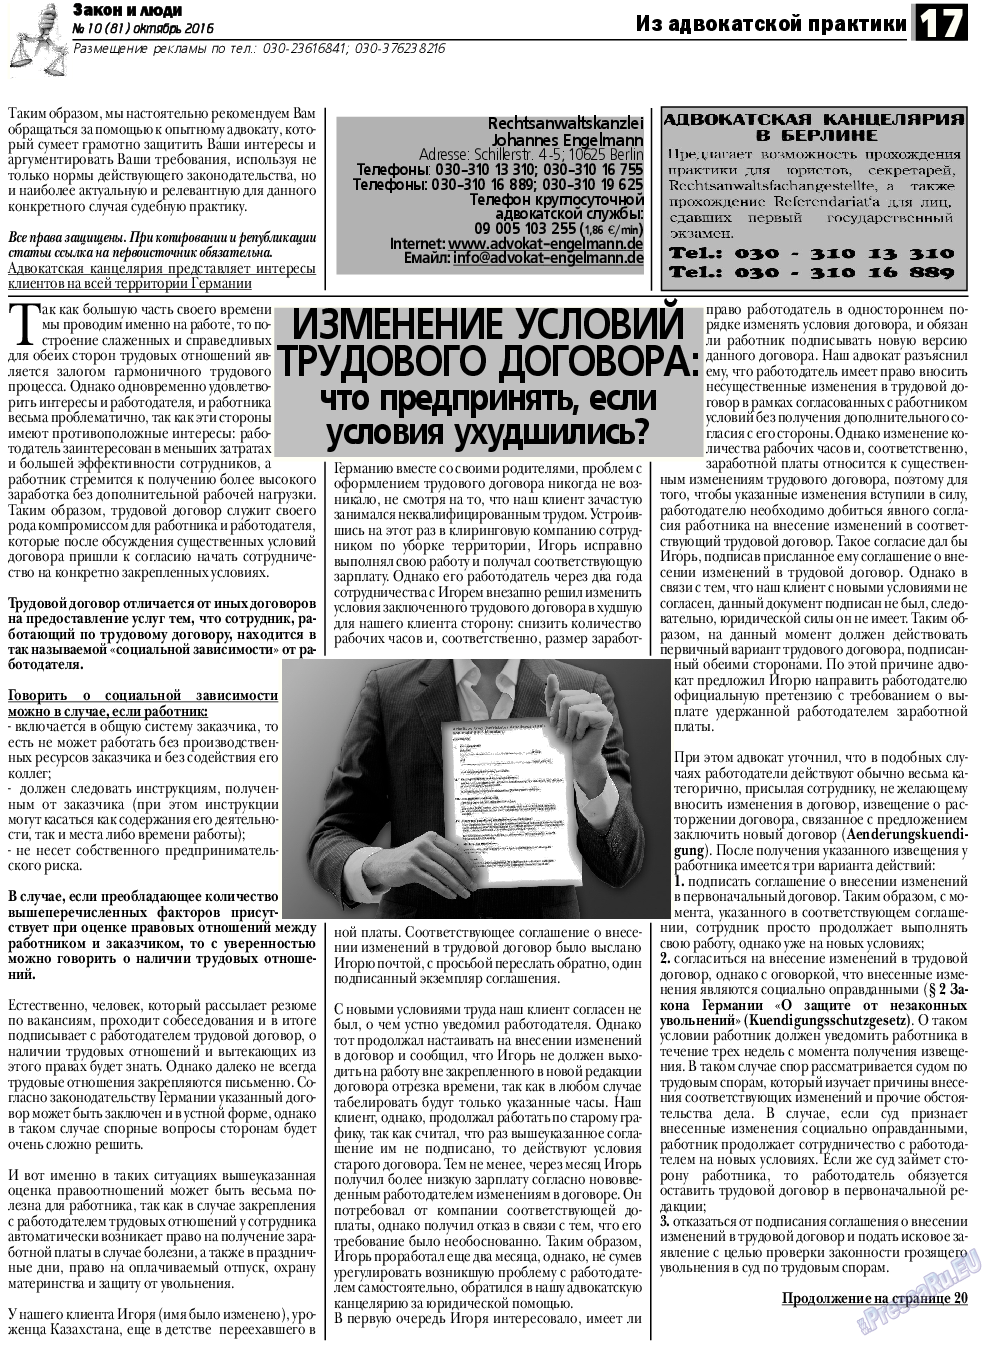 Закон и люди, газета. 2016 №10 стр.17